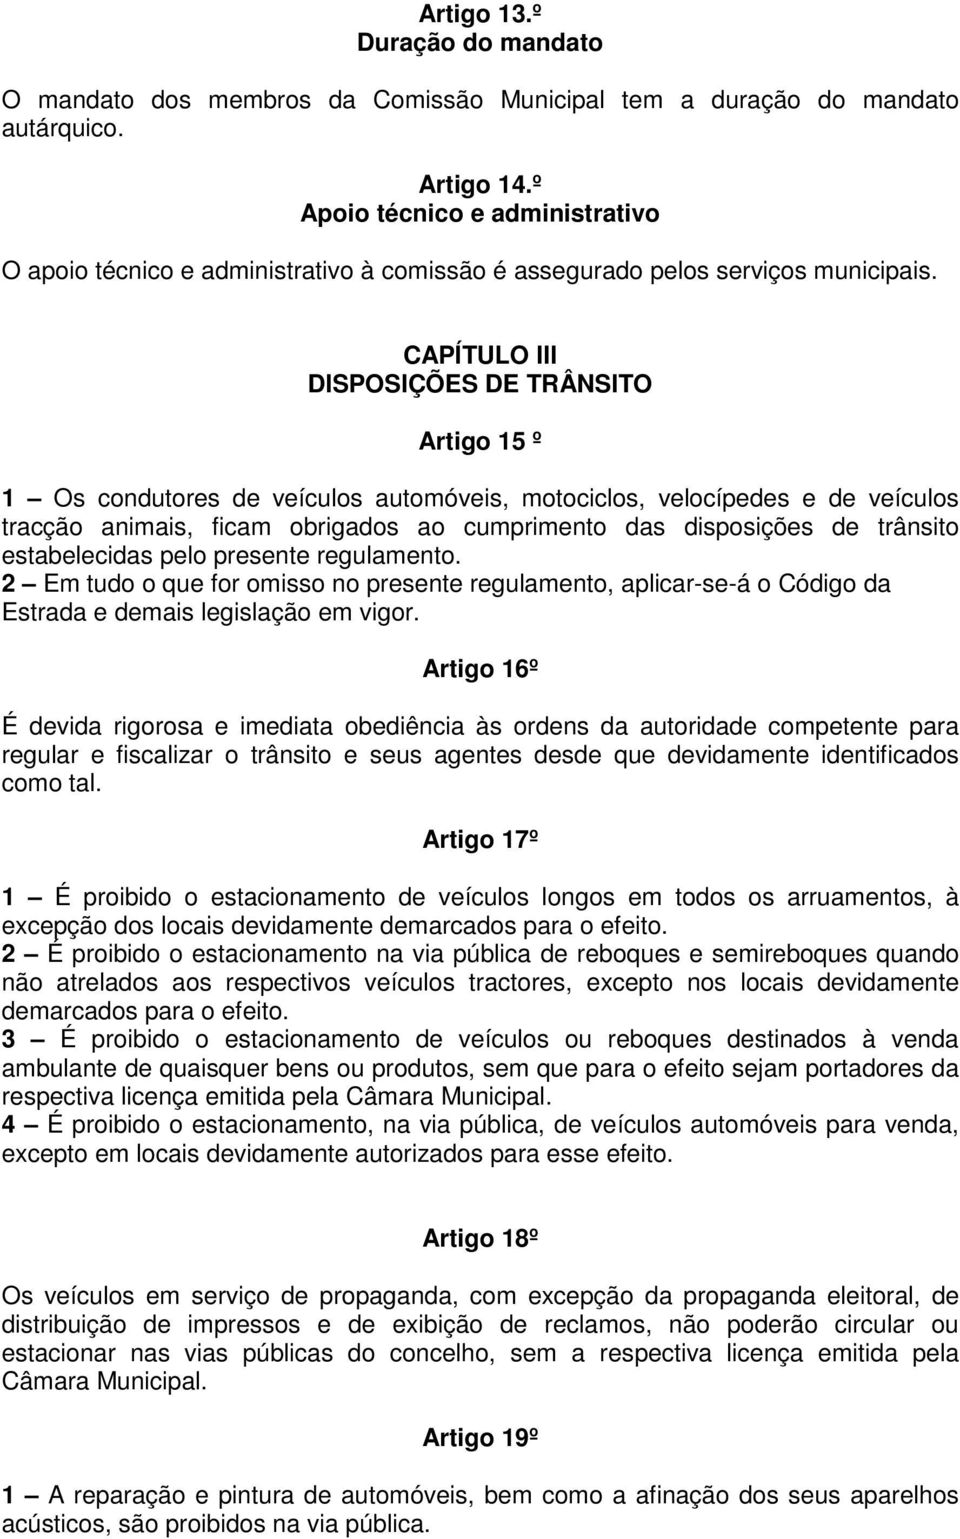 CAPÍTULO III DISPOSIÇÕES DE TRÂNSITO Artigo 15 º 1 Os condutores de veículos automóveis, motociclos, velocípedes e de veículos tracção animais, ficam obrigados ao cumprimento das disposições de